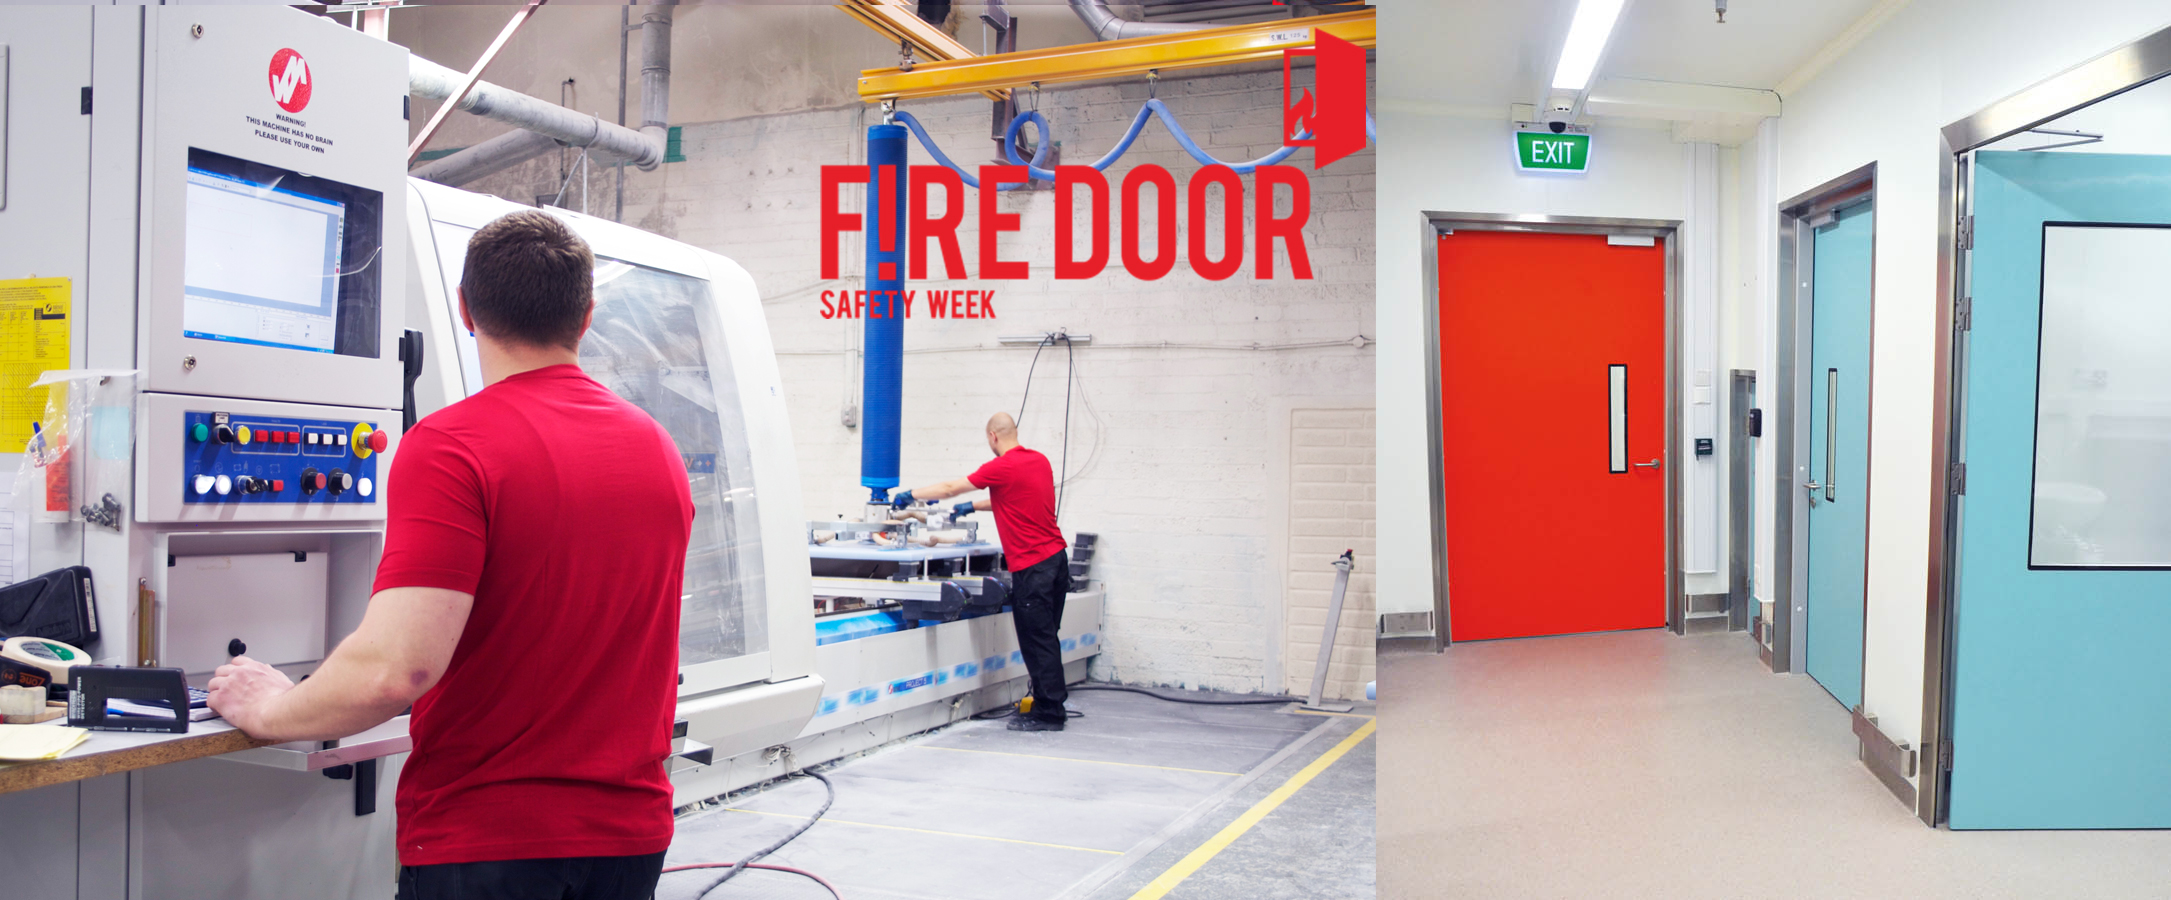 Fire door safety week.